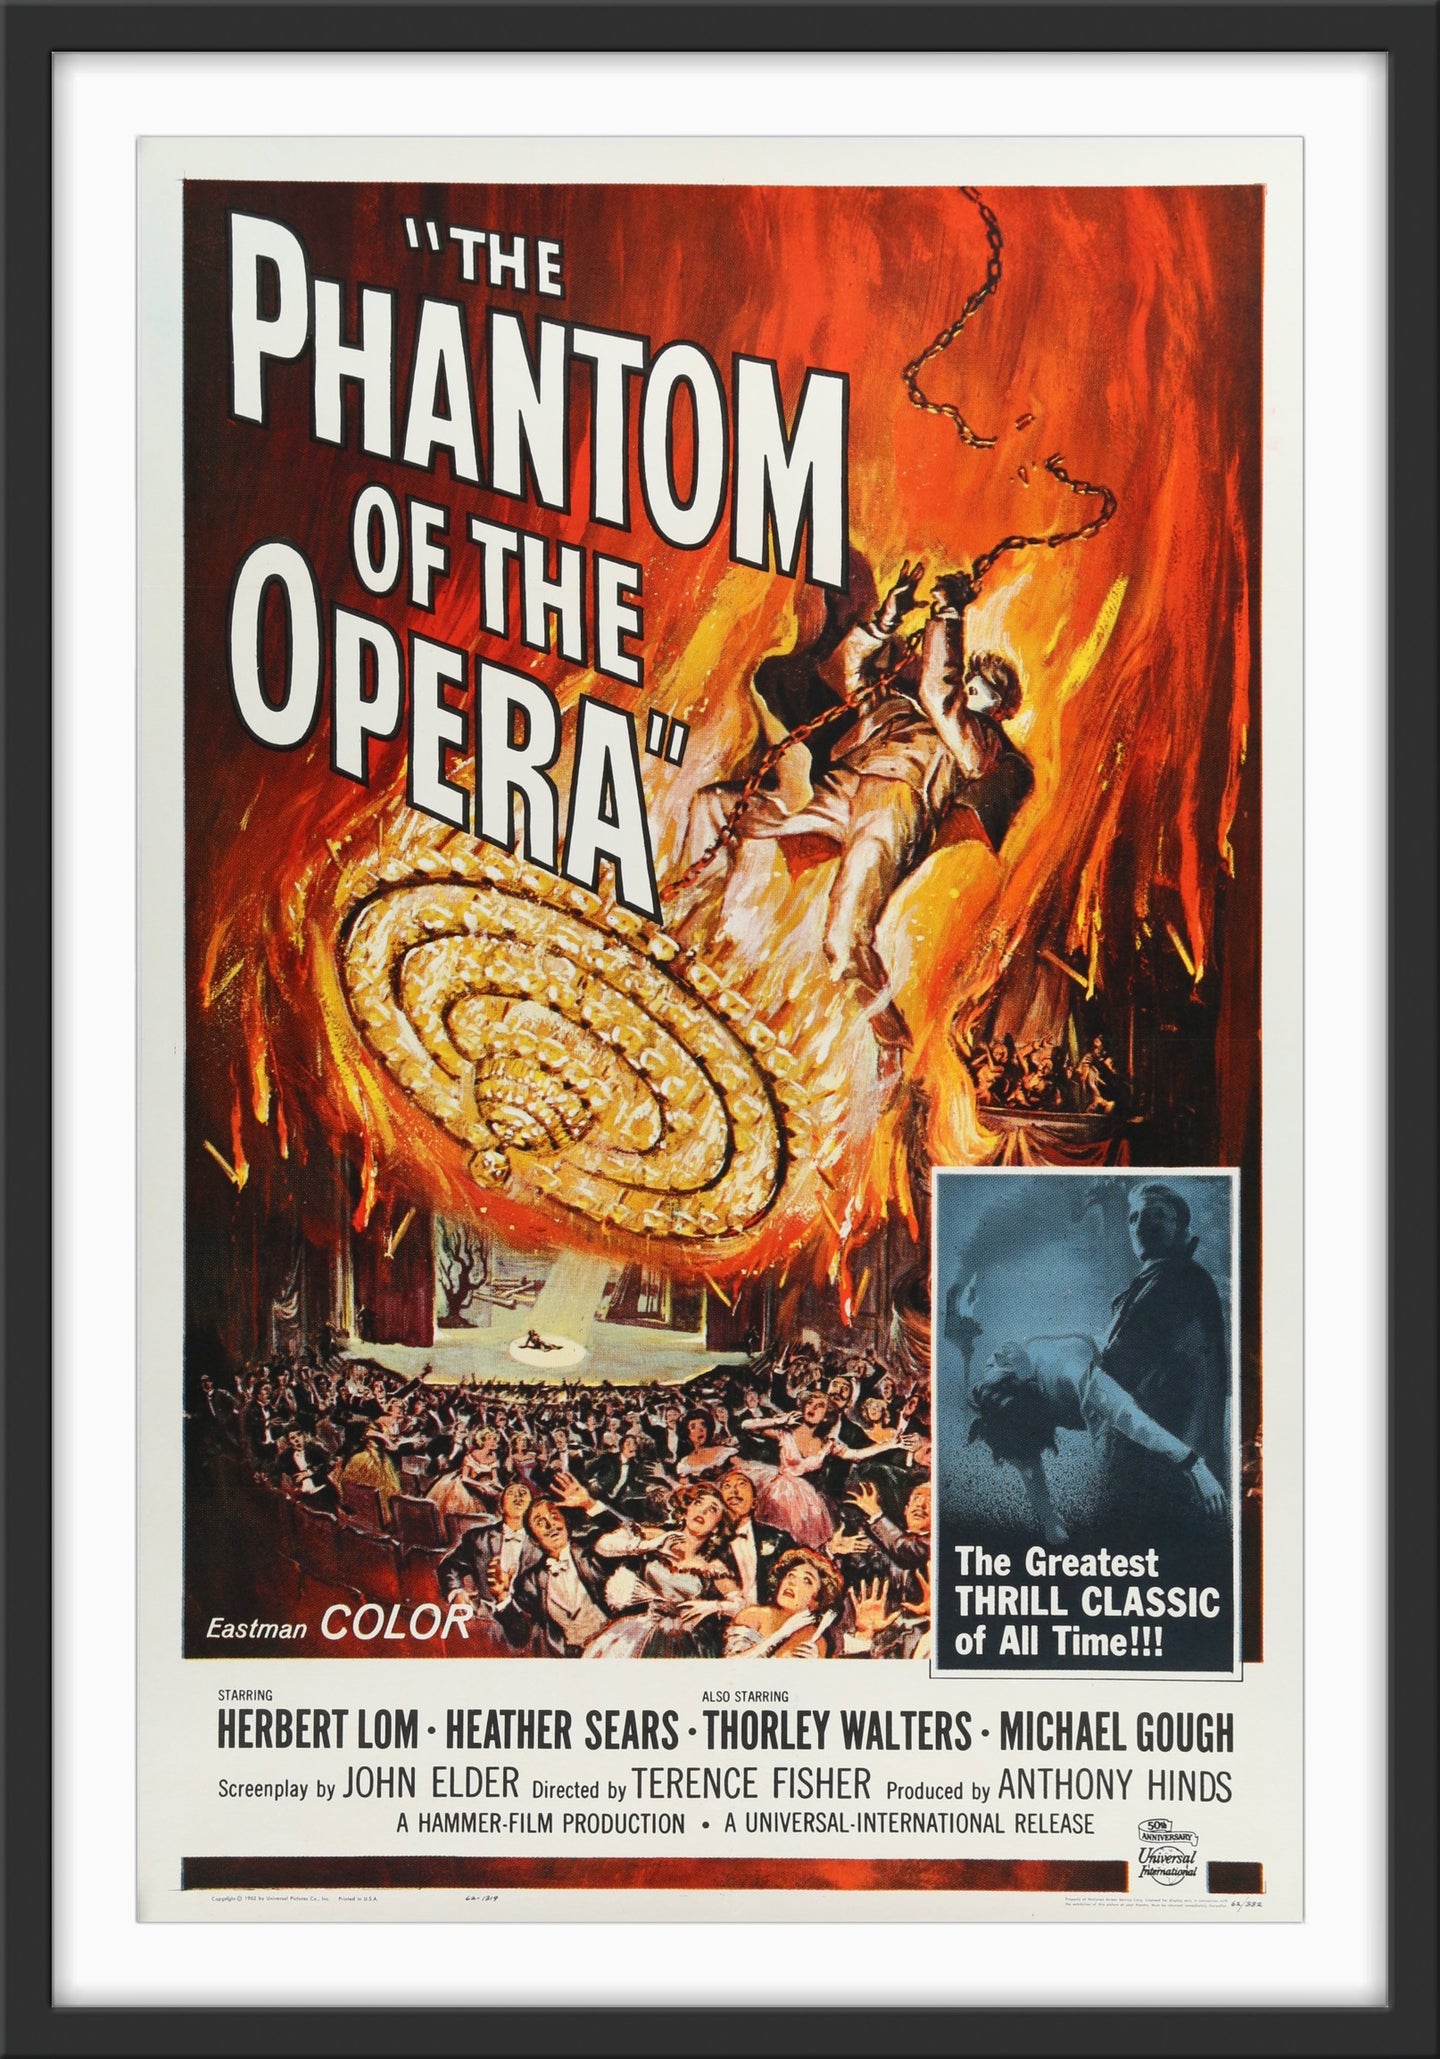 An original movie poster for the film The Phantom of the Opera